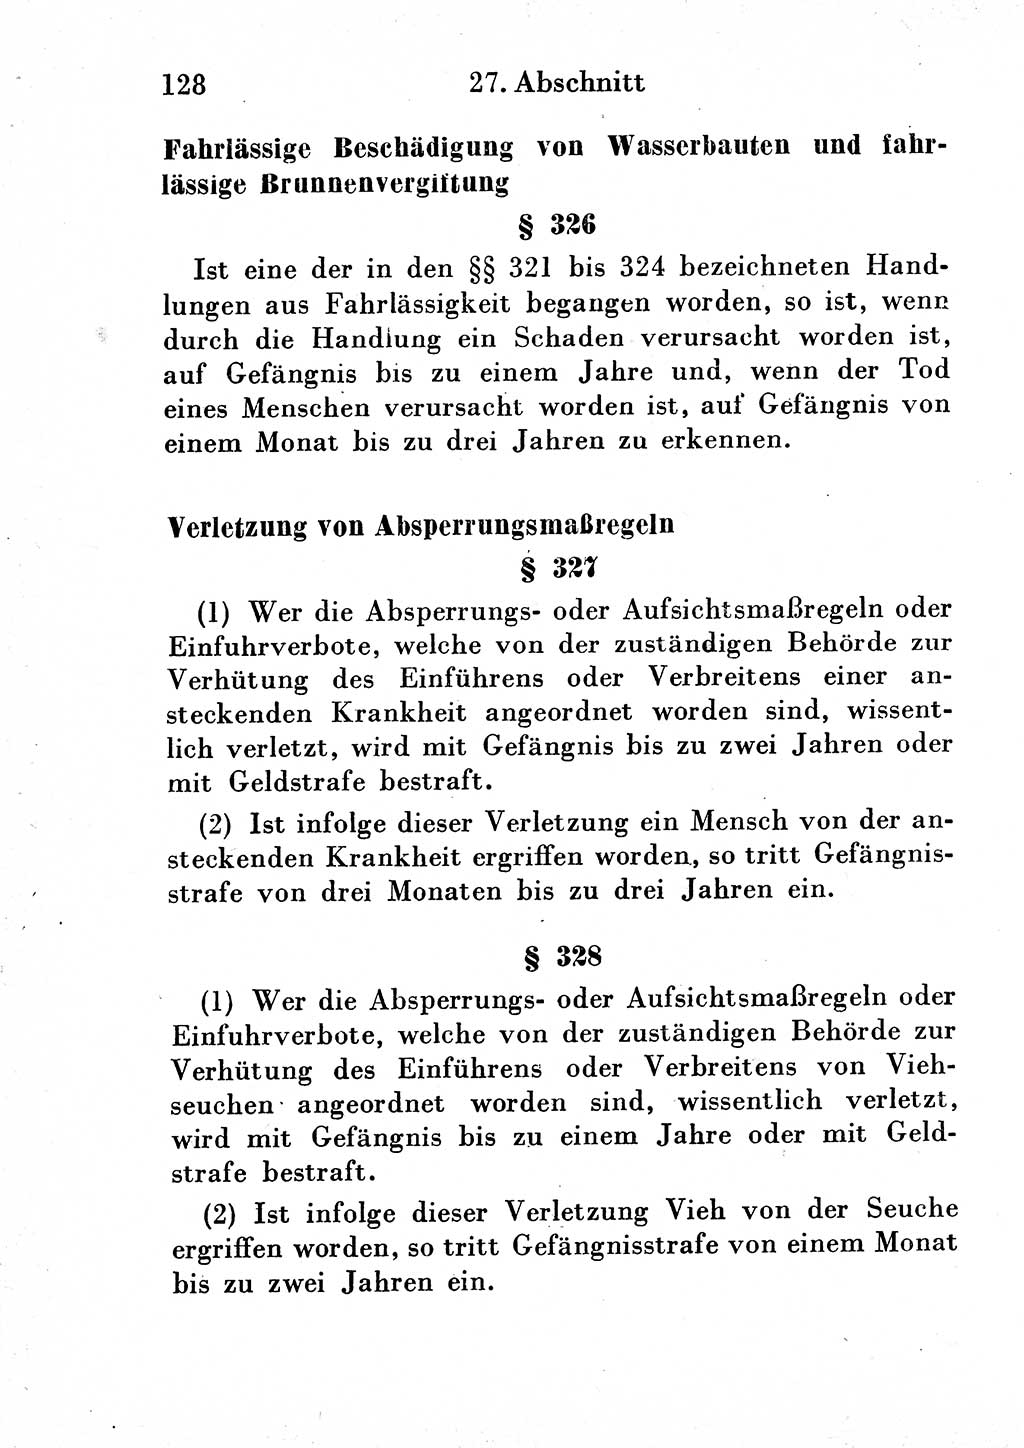 Strafgesetzbuch (StGB) und andere Strafgesetze [Deutsche Demokratische Republik (DDR)] 1954, Seite 128 (StGB Strafges. DDR 1954, S. 128)